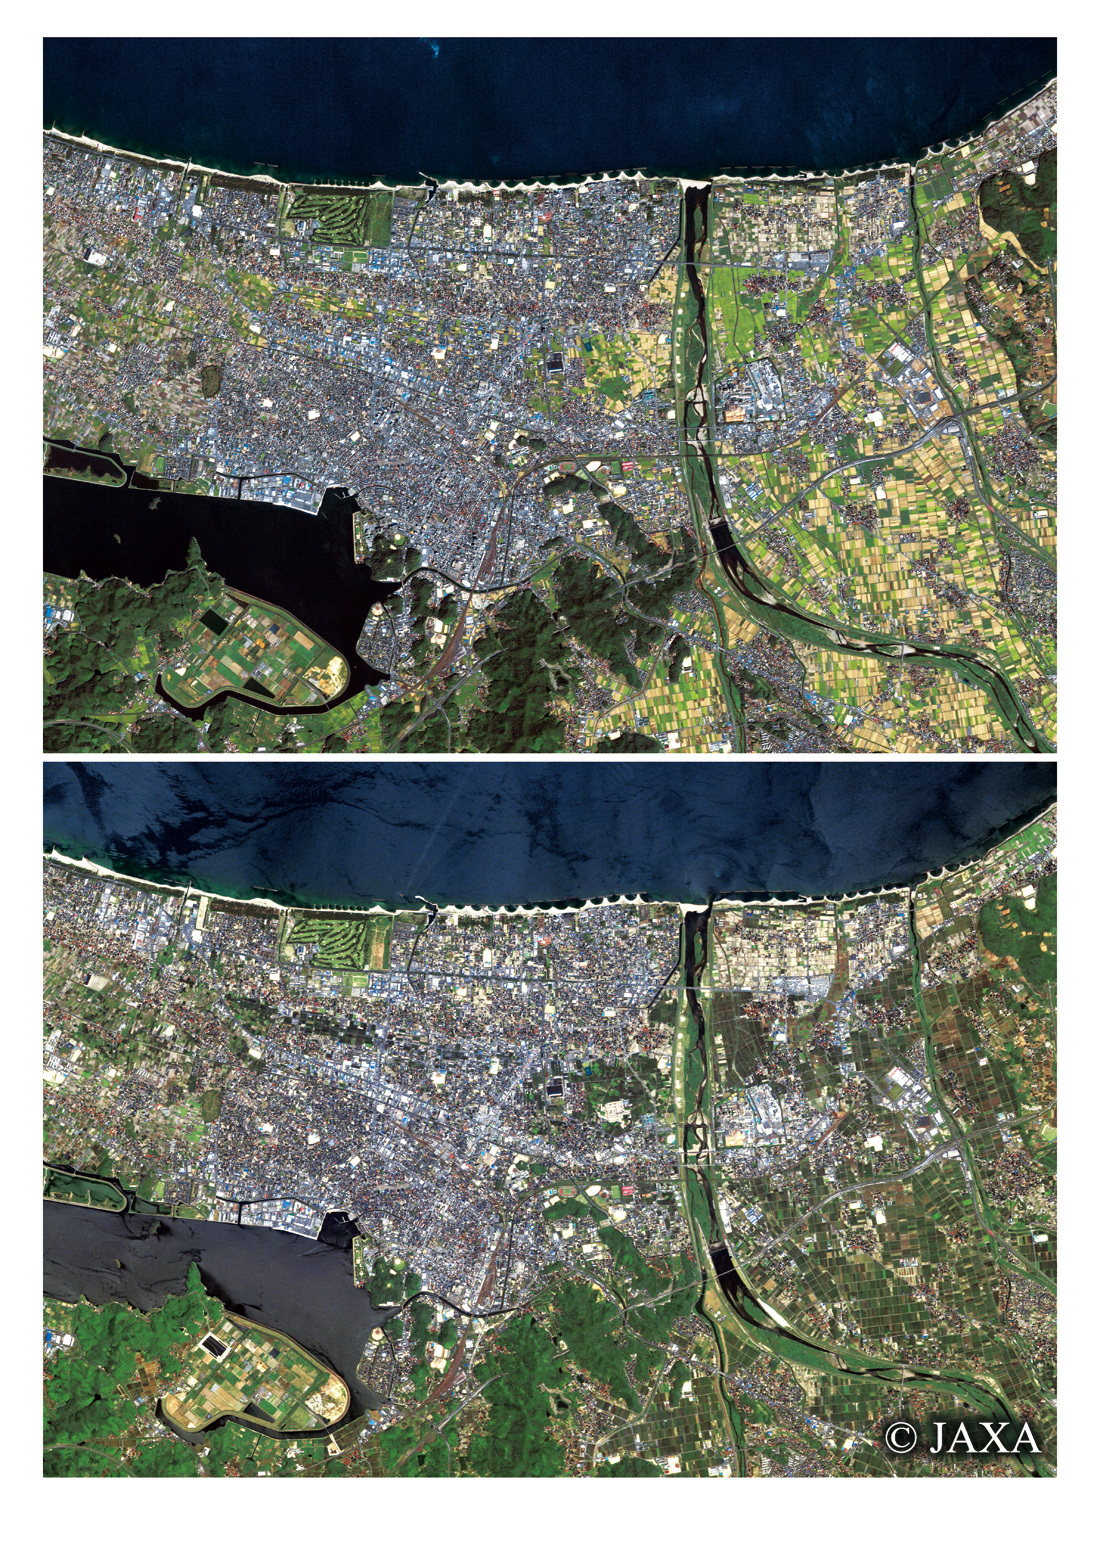 だいちから見た日本の都市 米子市周辺の移り変わり:衛星画像